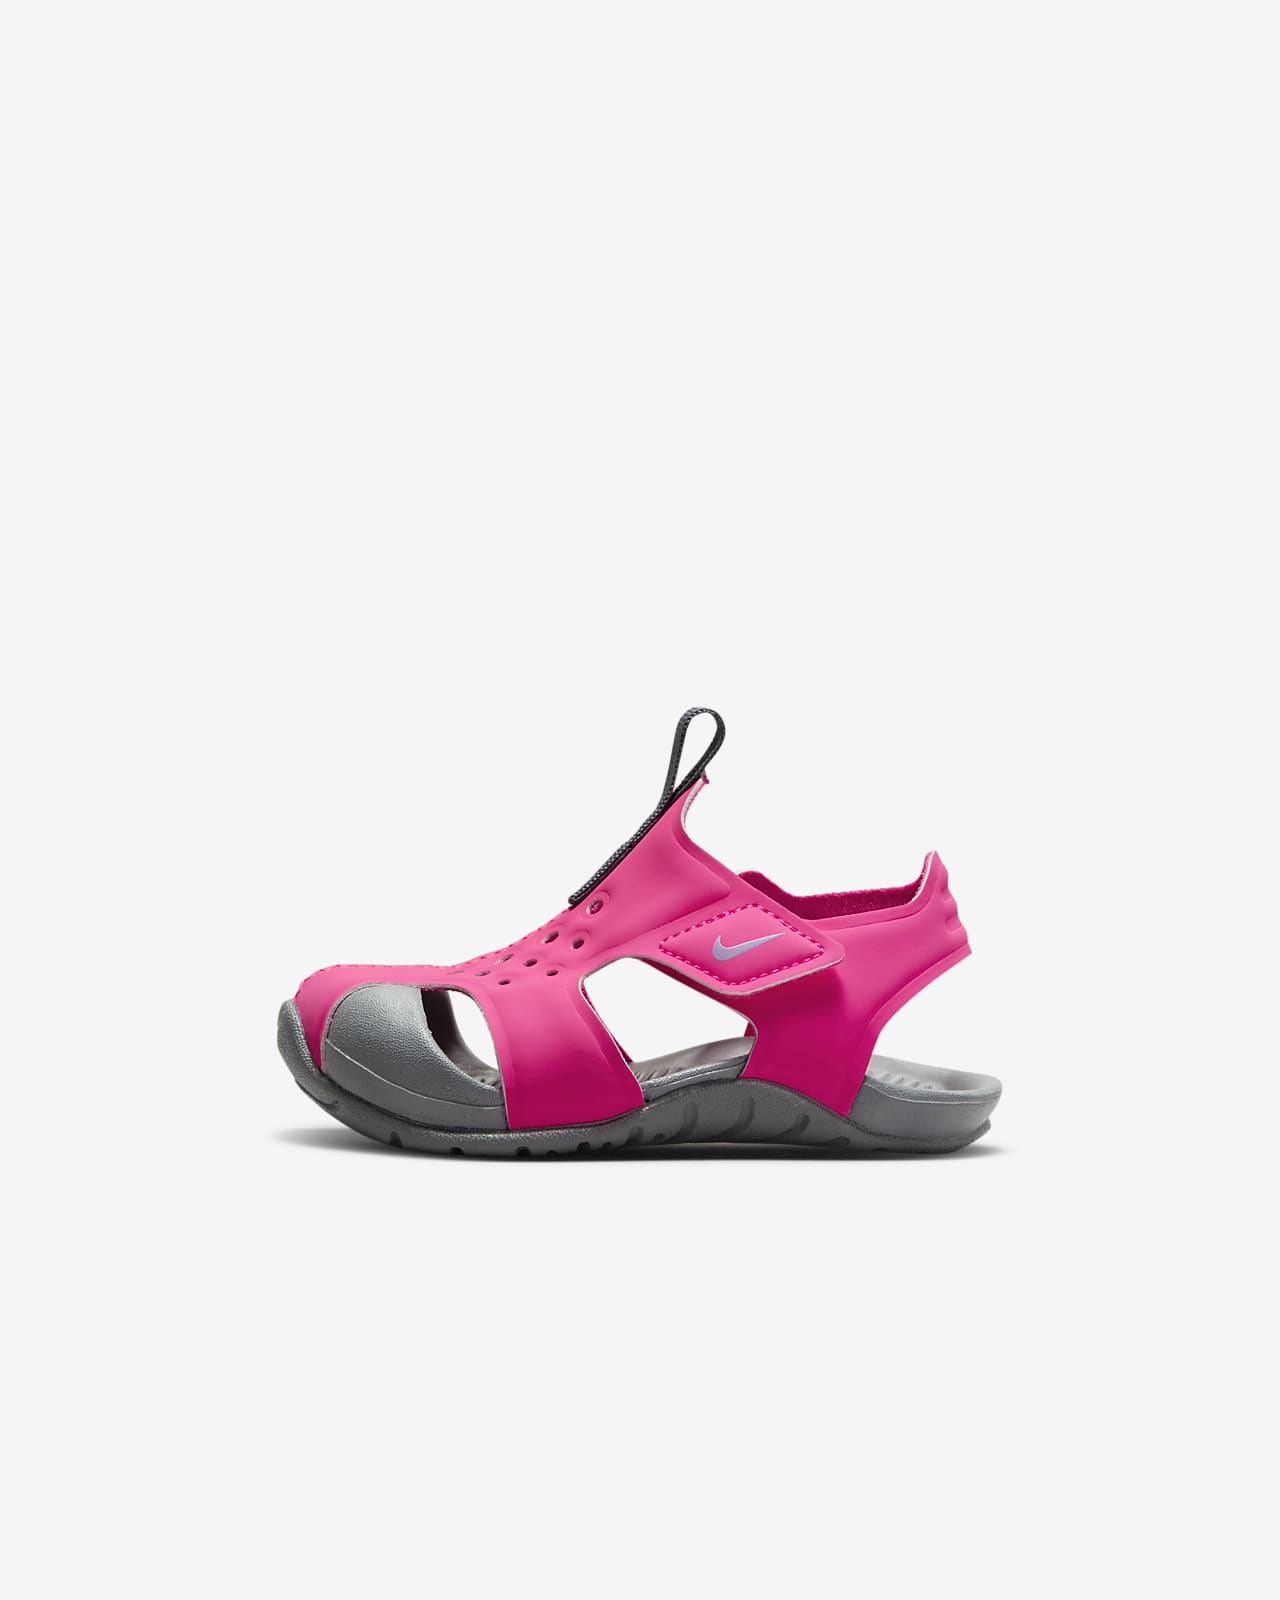 รองเท้าแซนดัลทารก/เด็กวัยหัดเดิน Nike Sunray Protect 2